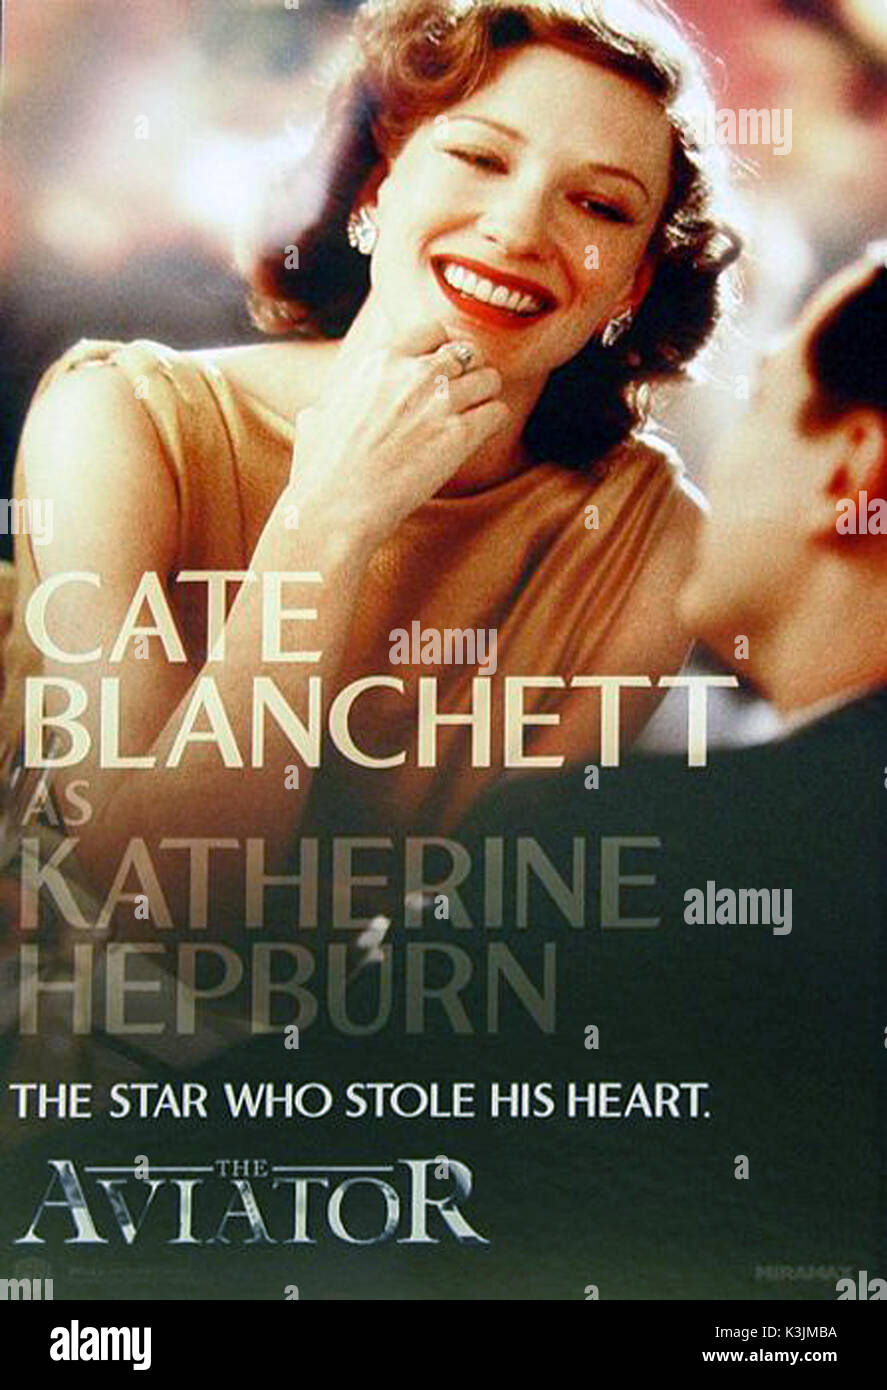 THE AVIATOR CATE BLANCHETT as Katharine Hepburn THE AVIATOR Date